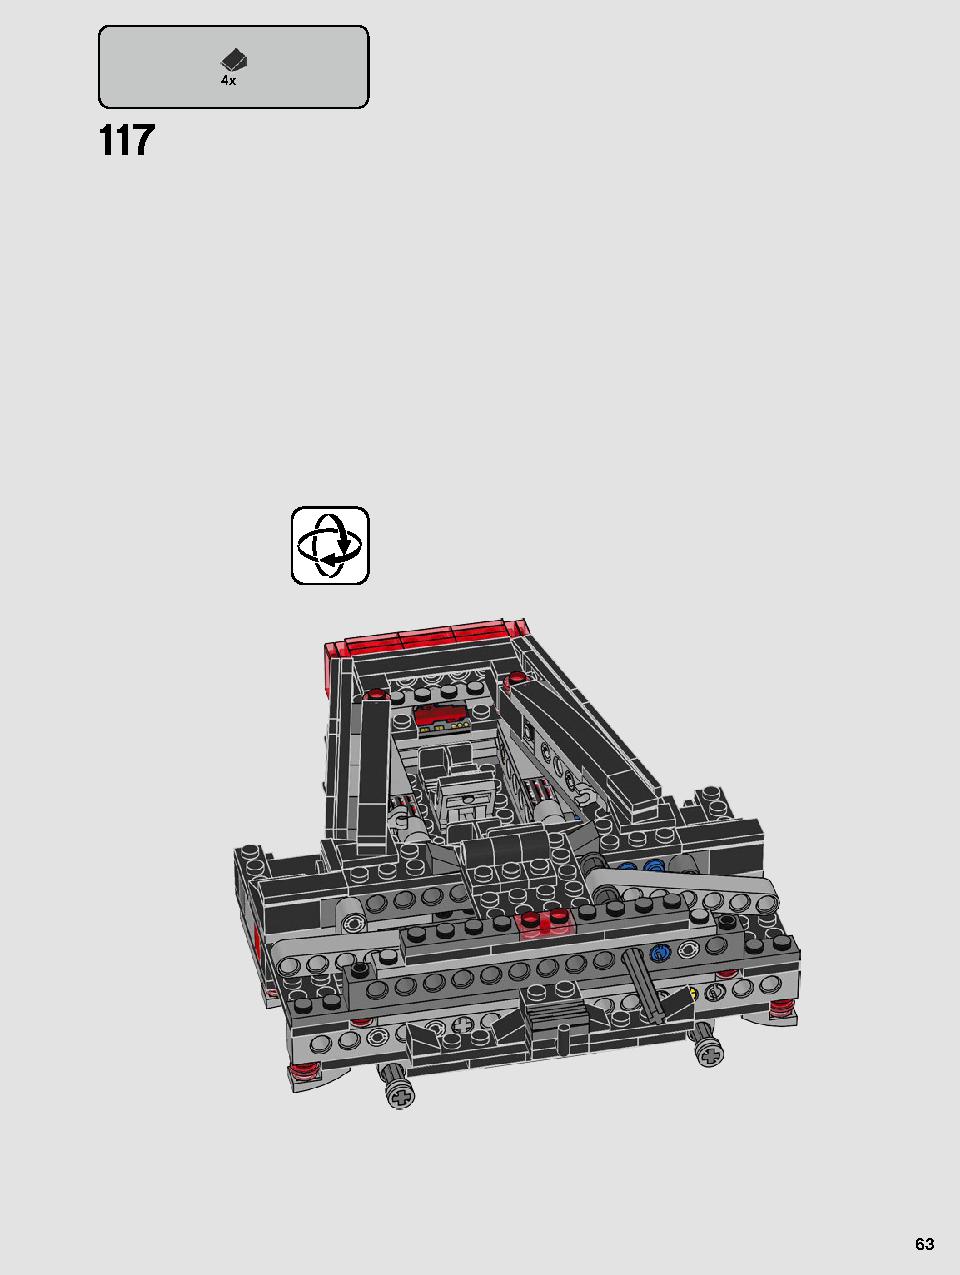 스타워즈 카일로 렌의 셔틀™ 75256 레고 세트 제품정보 레고 조립설명서 63 page